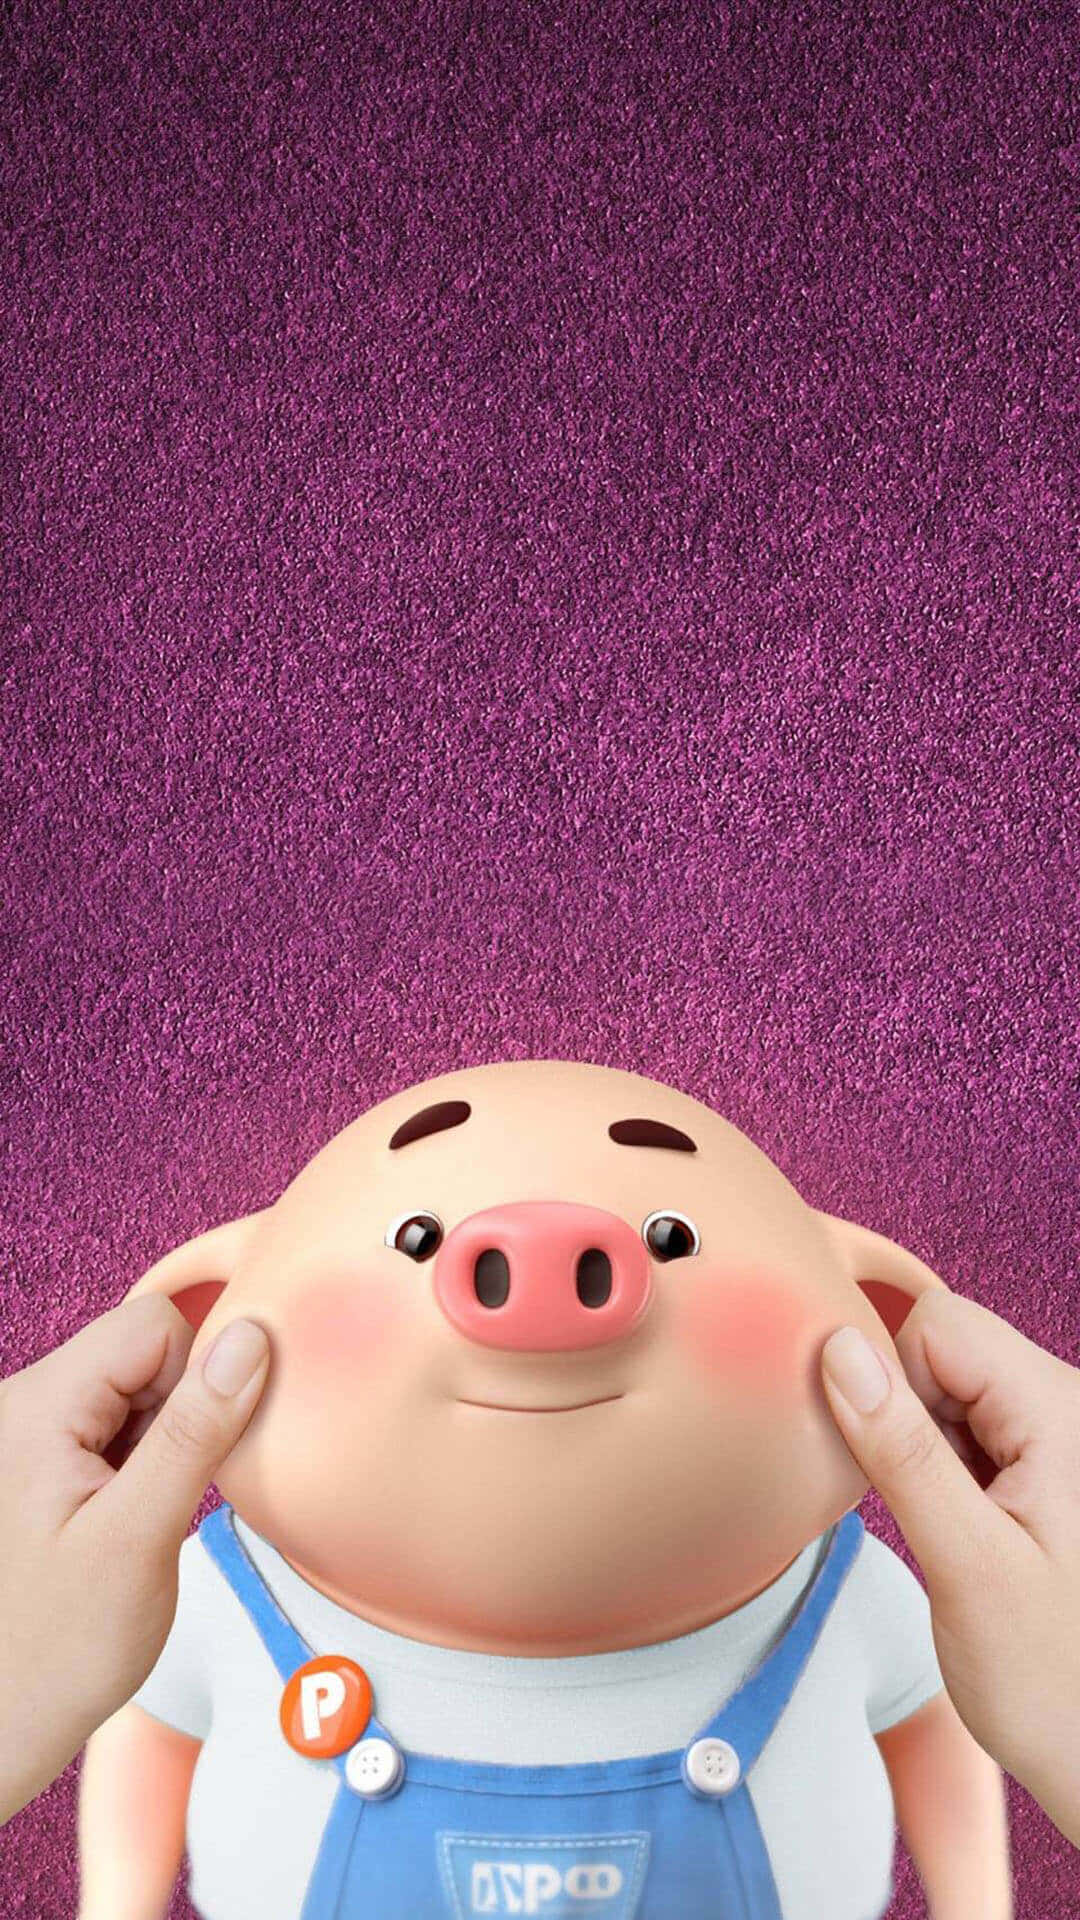 Investeraklokt - Spara Pengar Med Piggy!